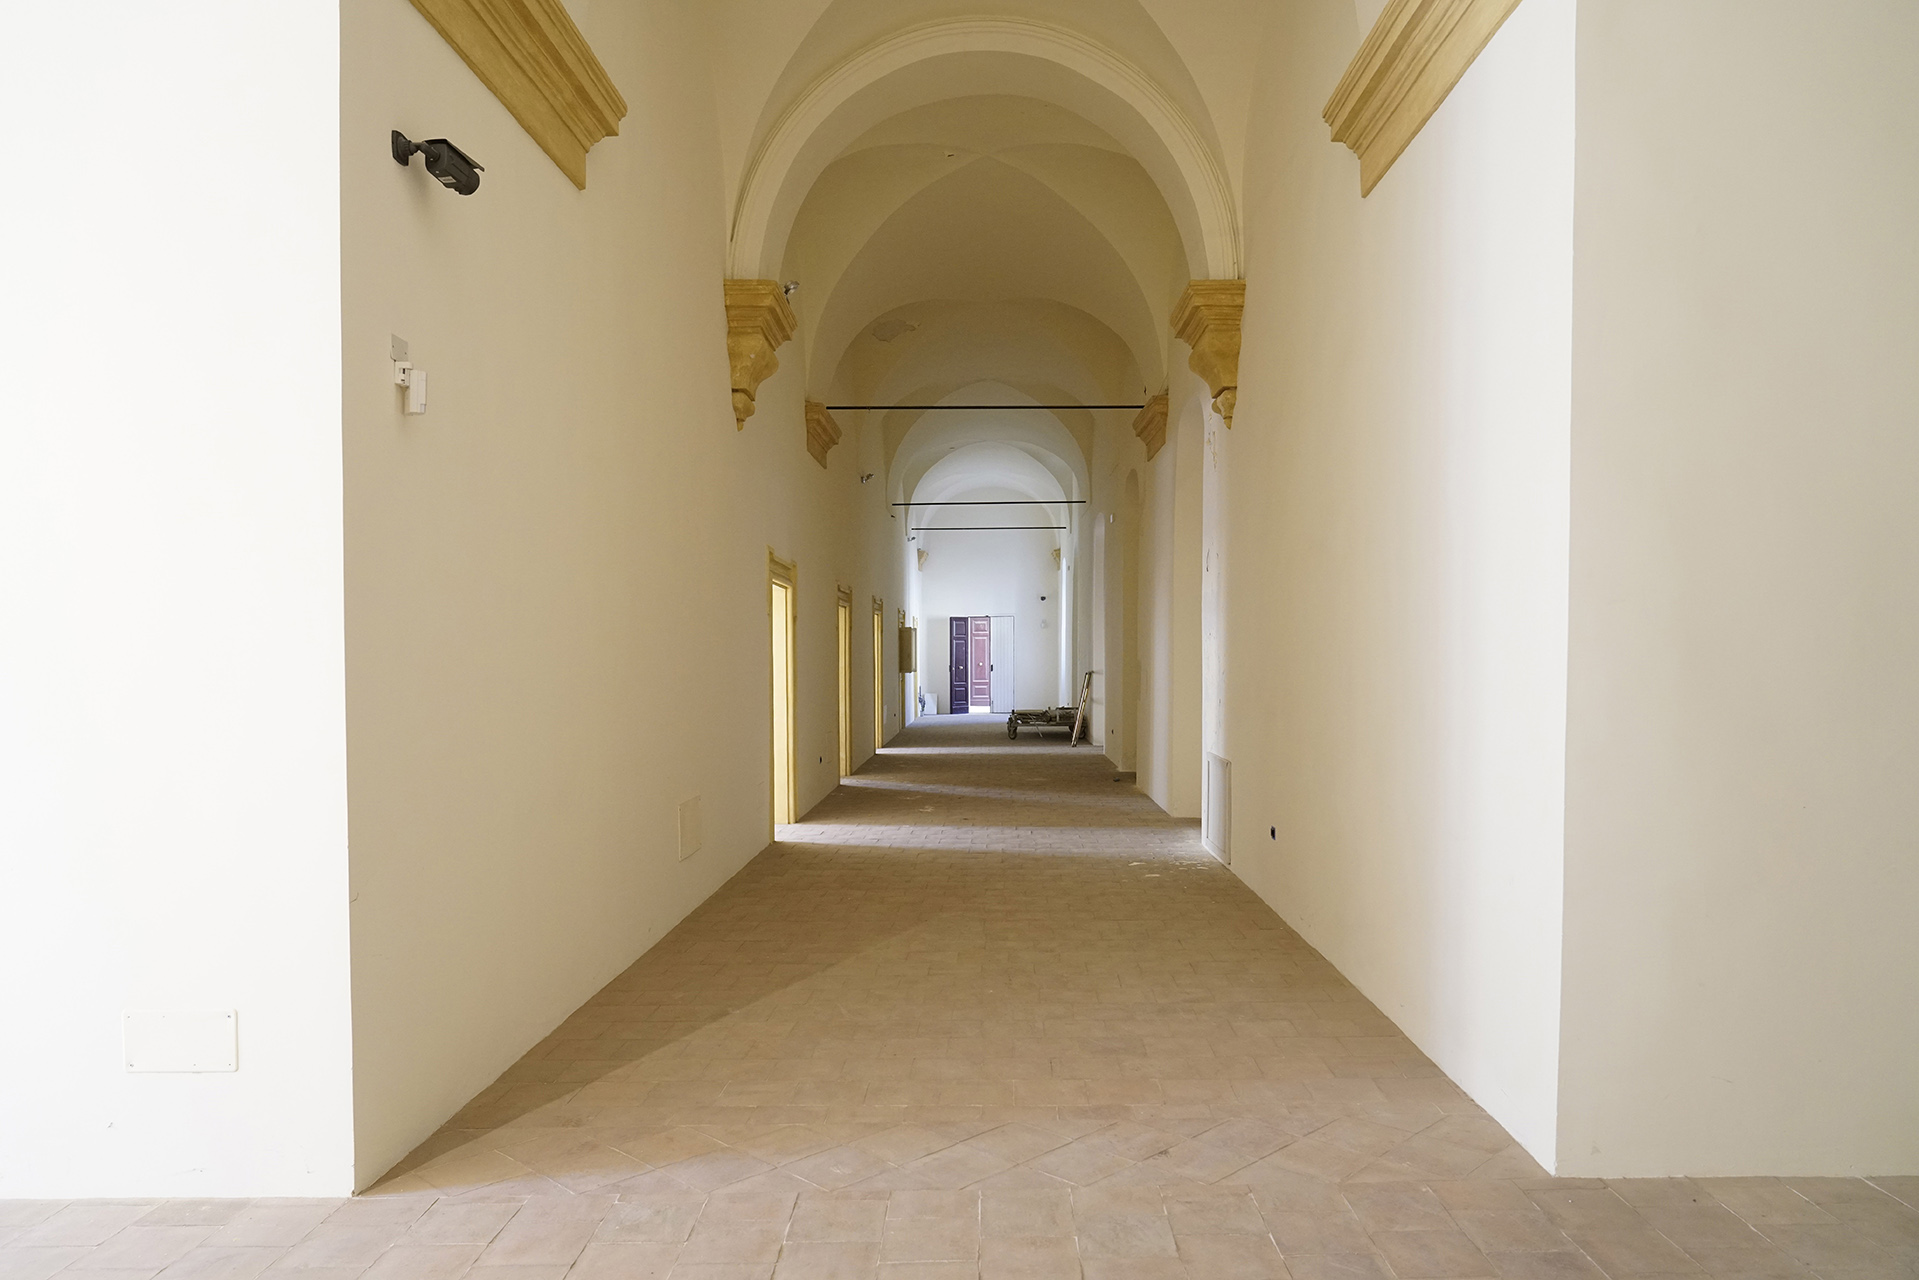 Ex Convento dei Crociferi (convento, Crociferi) - Catania (CT) 